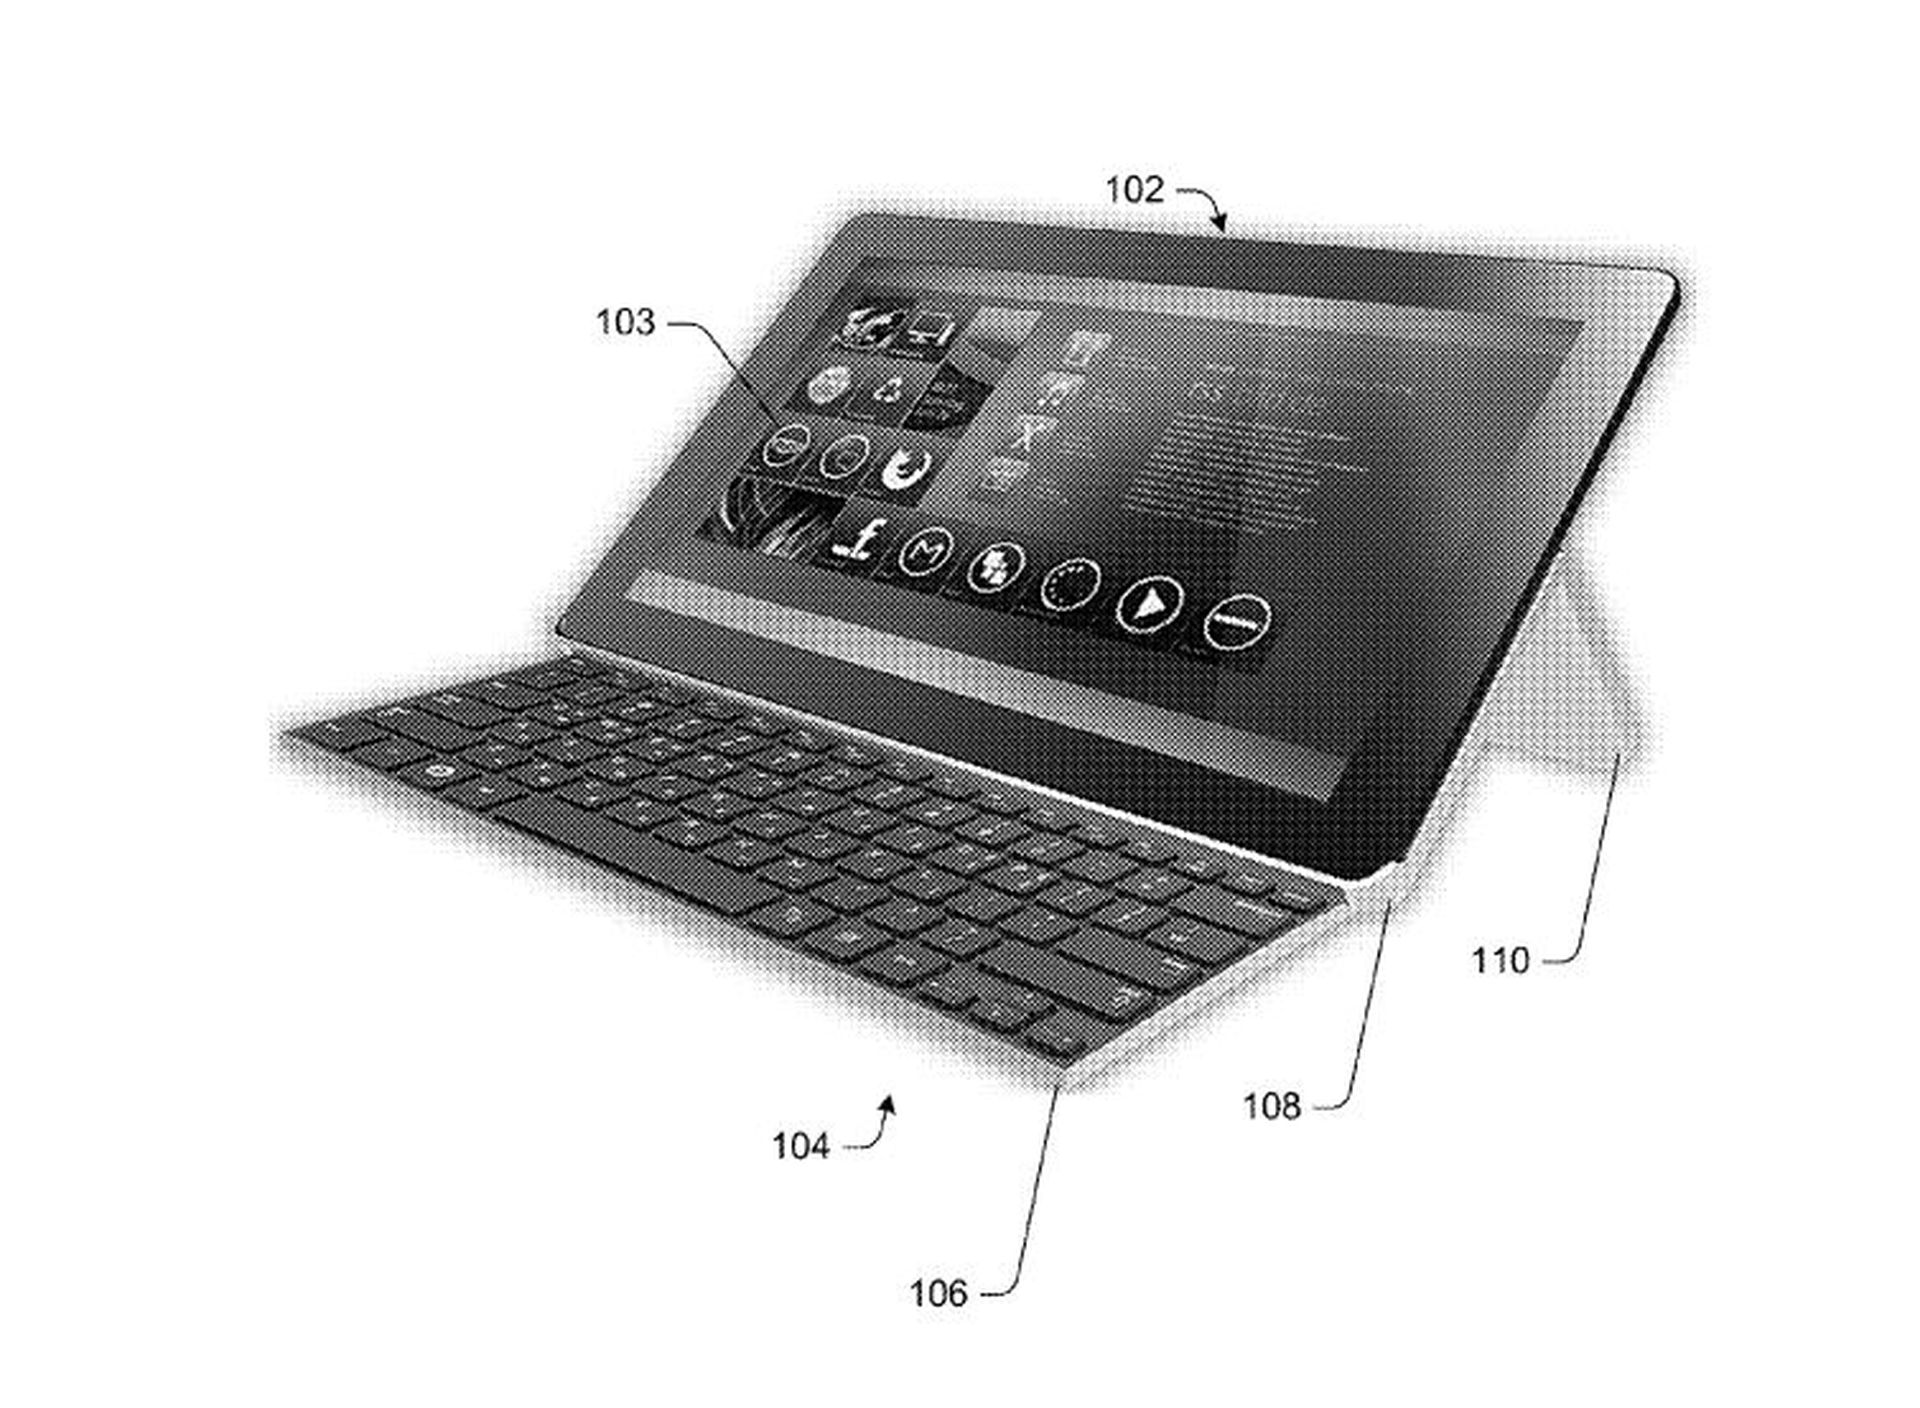 Microsoft ha patentado un teclado plegable para tablets